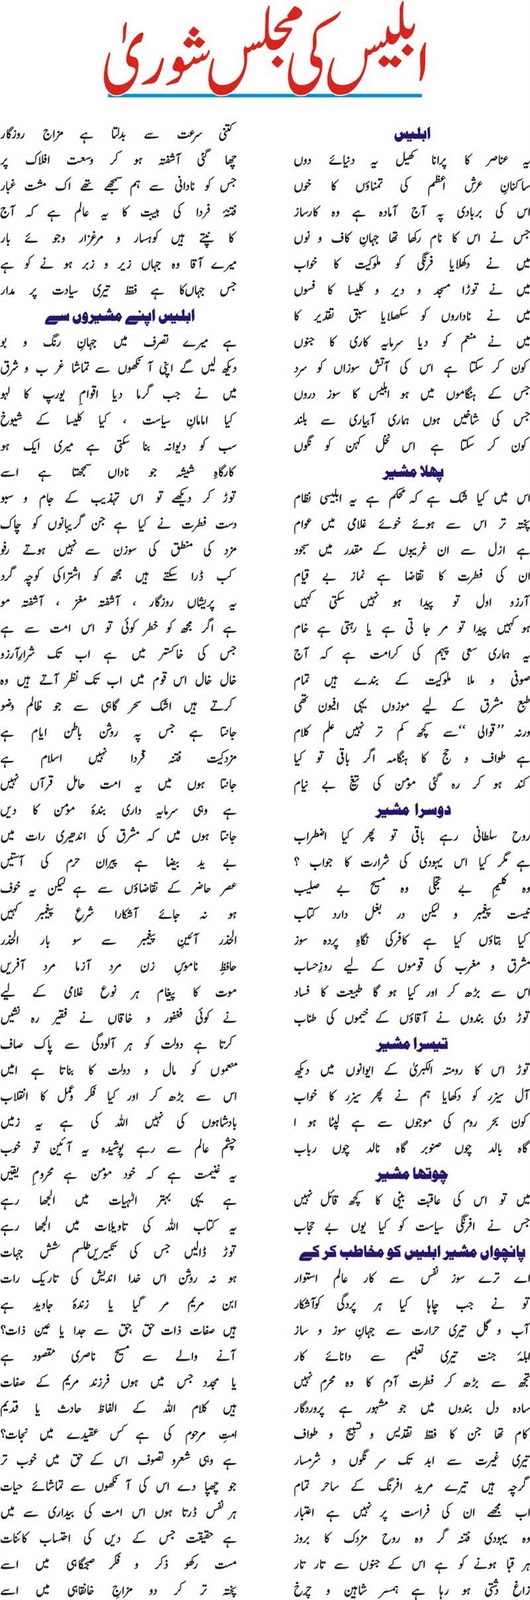 Urdu Adab Iblees Ki Majlis E Shura An Awakening Poem By Iqbal